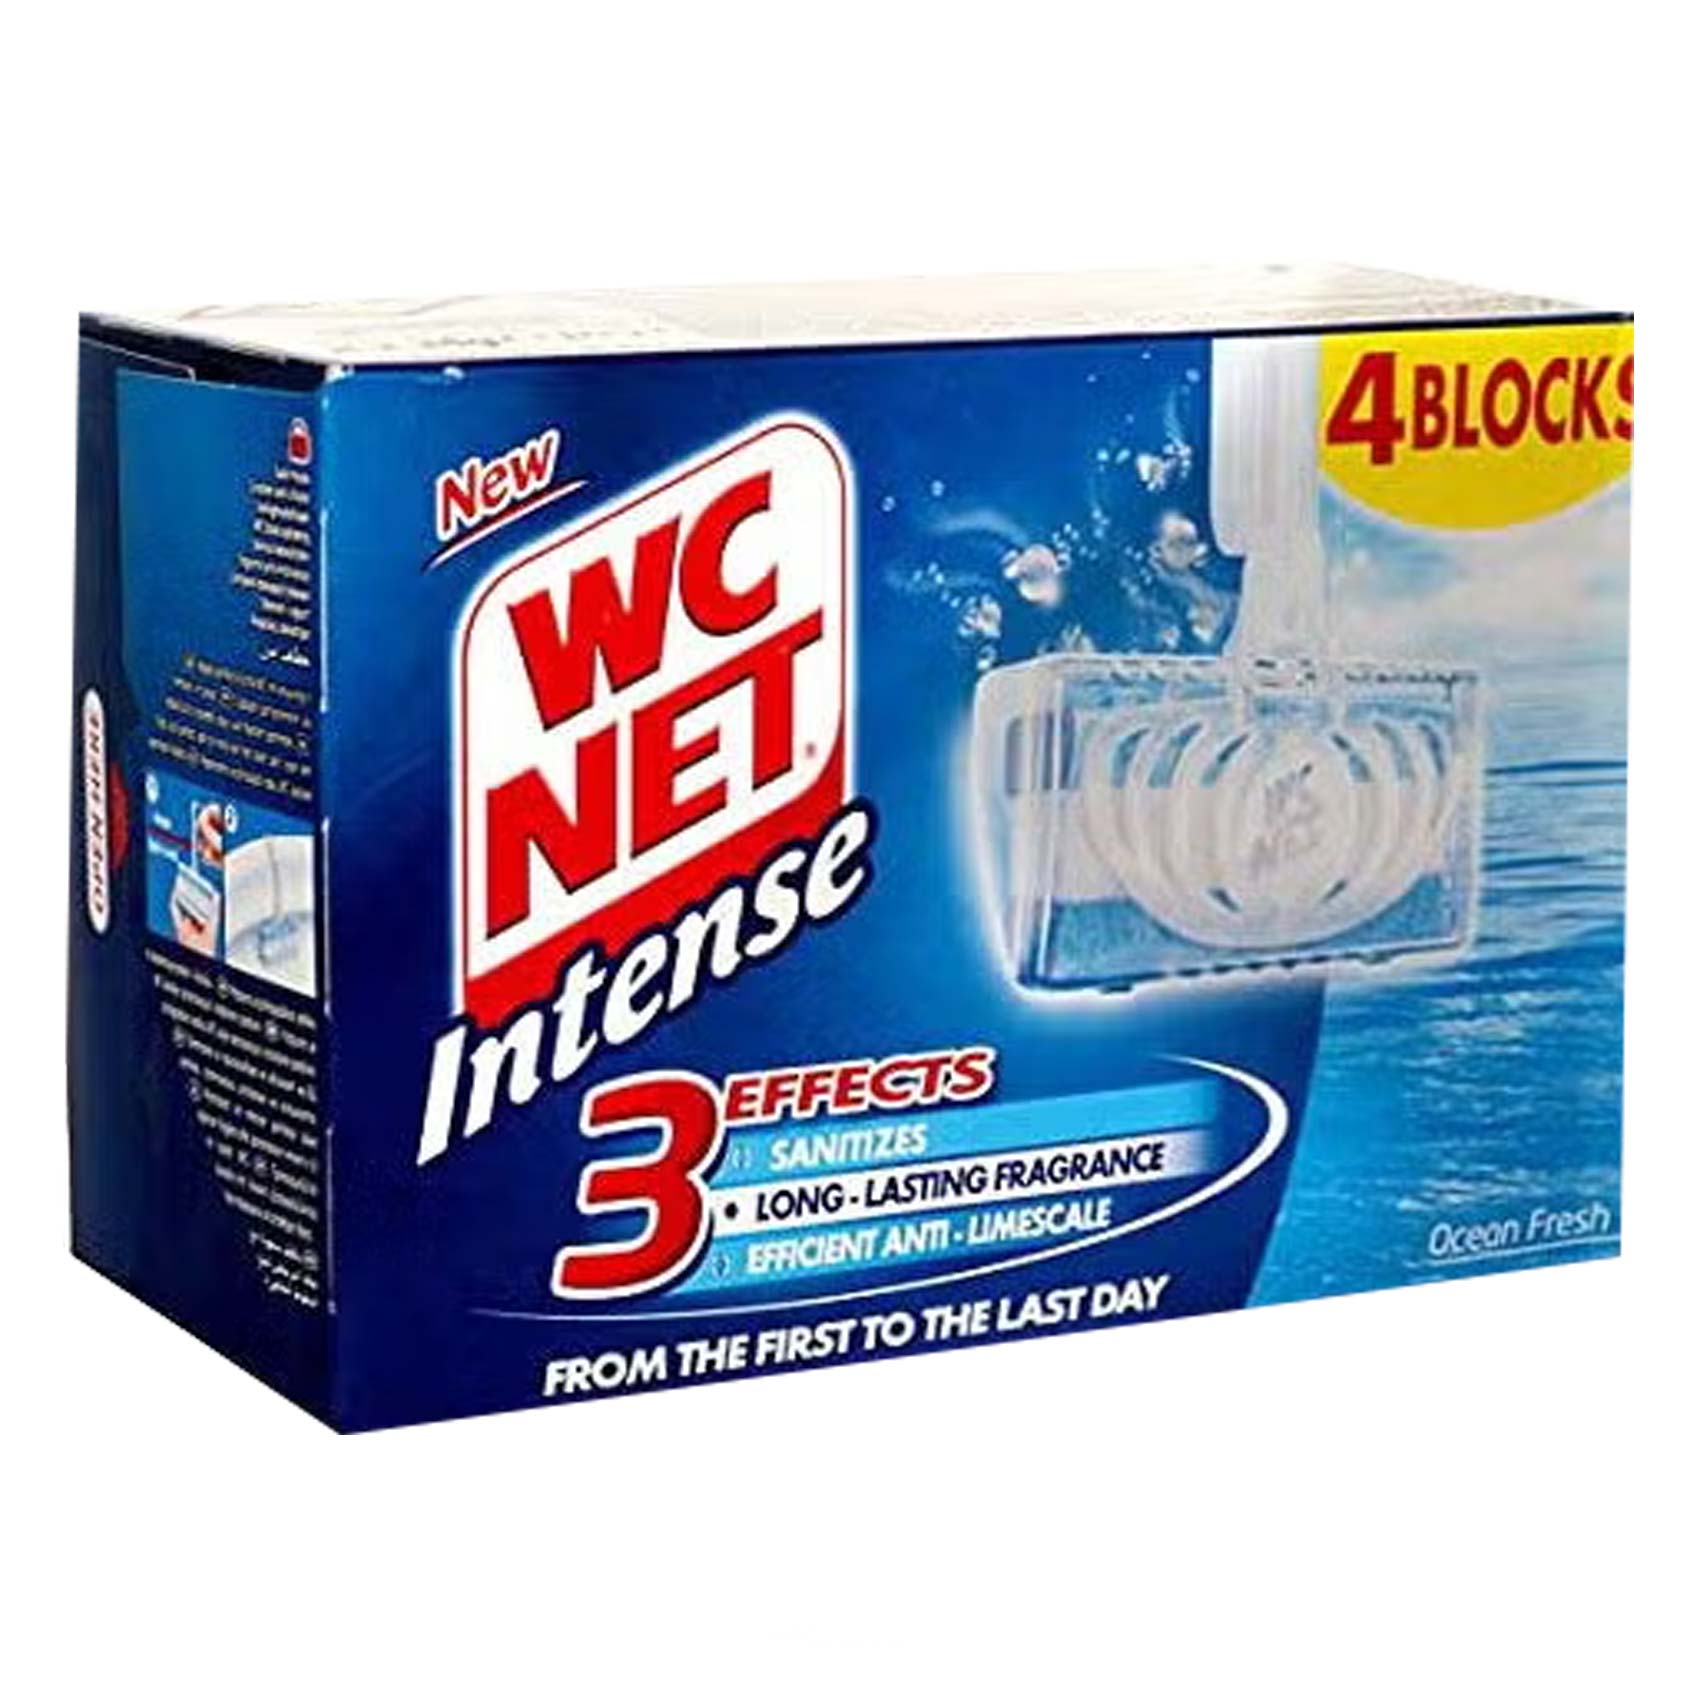 WC Net Blue Ocean Fresh Rim Block Toilet Cleaner 34g x Pack of 4